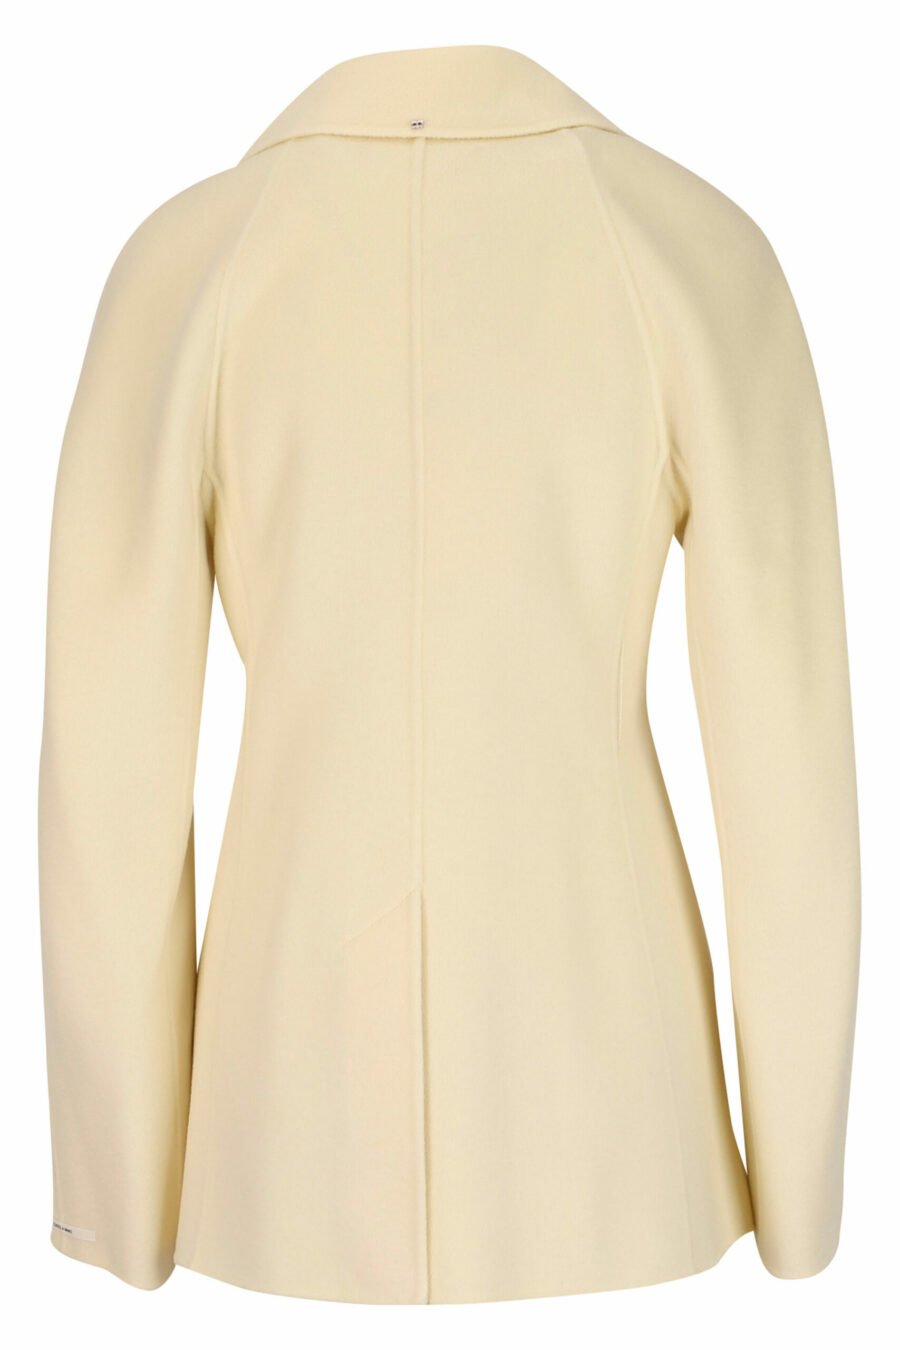 Manteau court de couleur vanille avec ceinture - 20810241060082 2 échelles